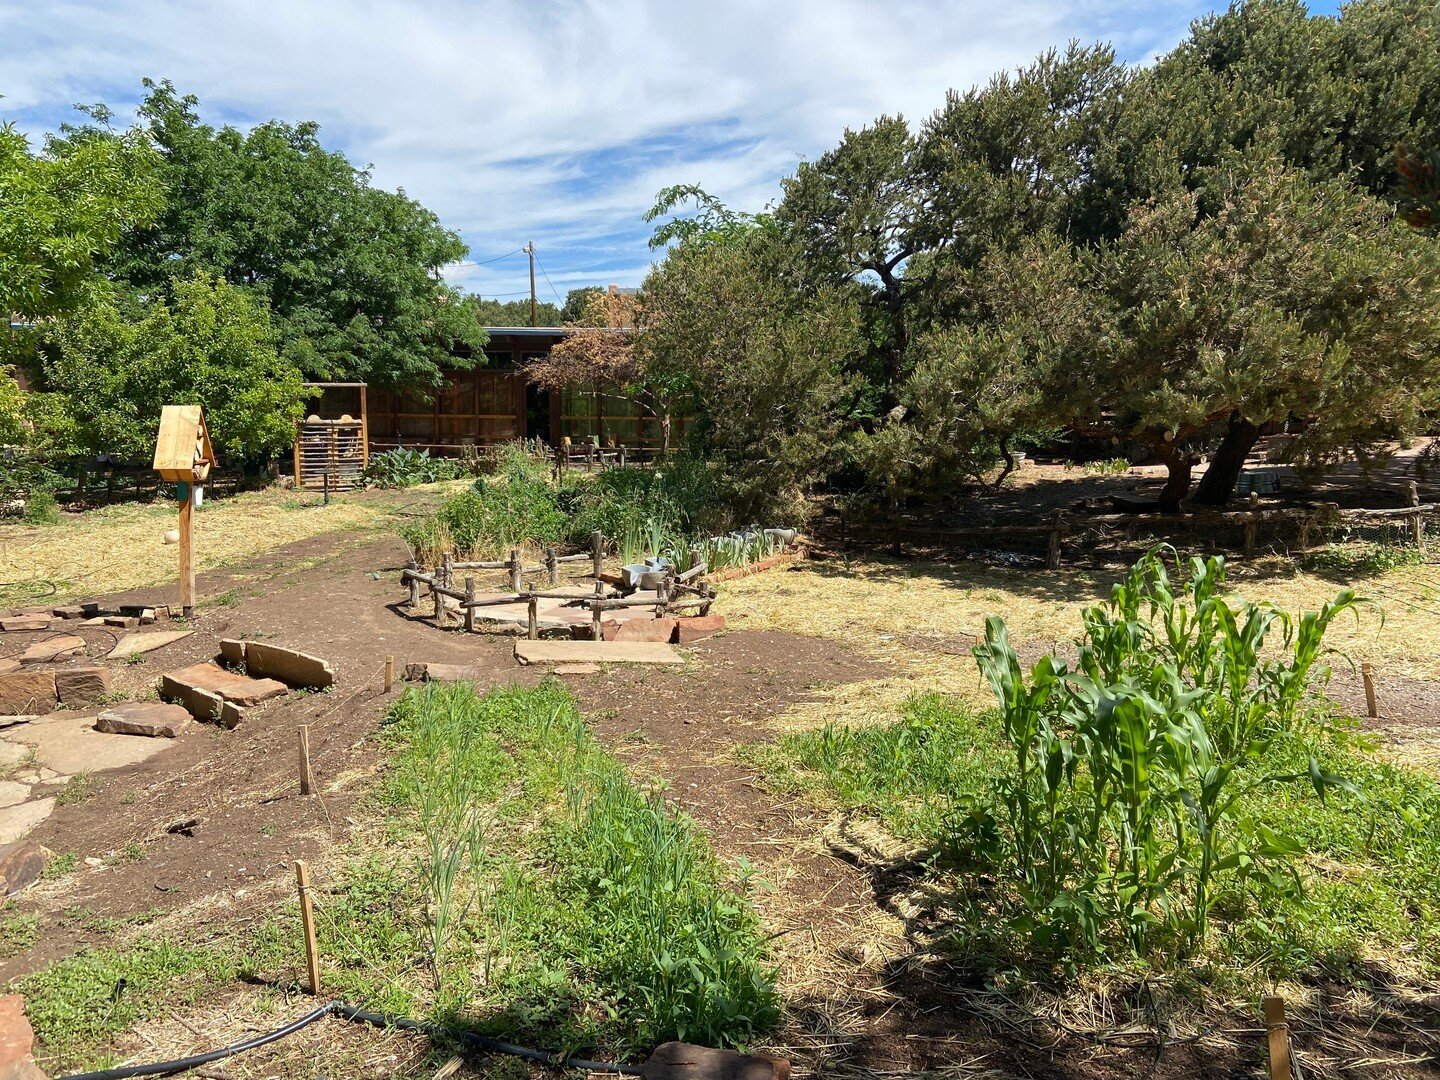 最近的雨对我们的花园来说是一件幸事! 6月28日(星期二)下午12点至3点参加我们的社区花园工作日. 帮助我们使我们的花园更加美丽和丰富!

# santafewaldorfschool # schoolgarden